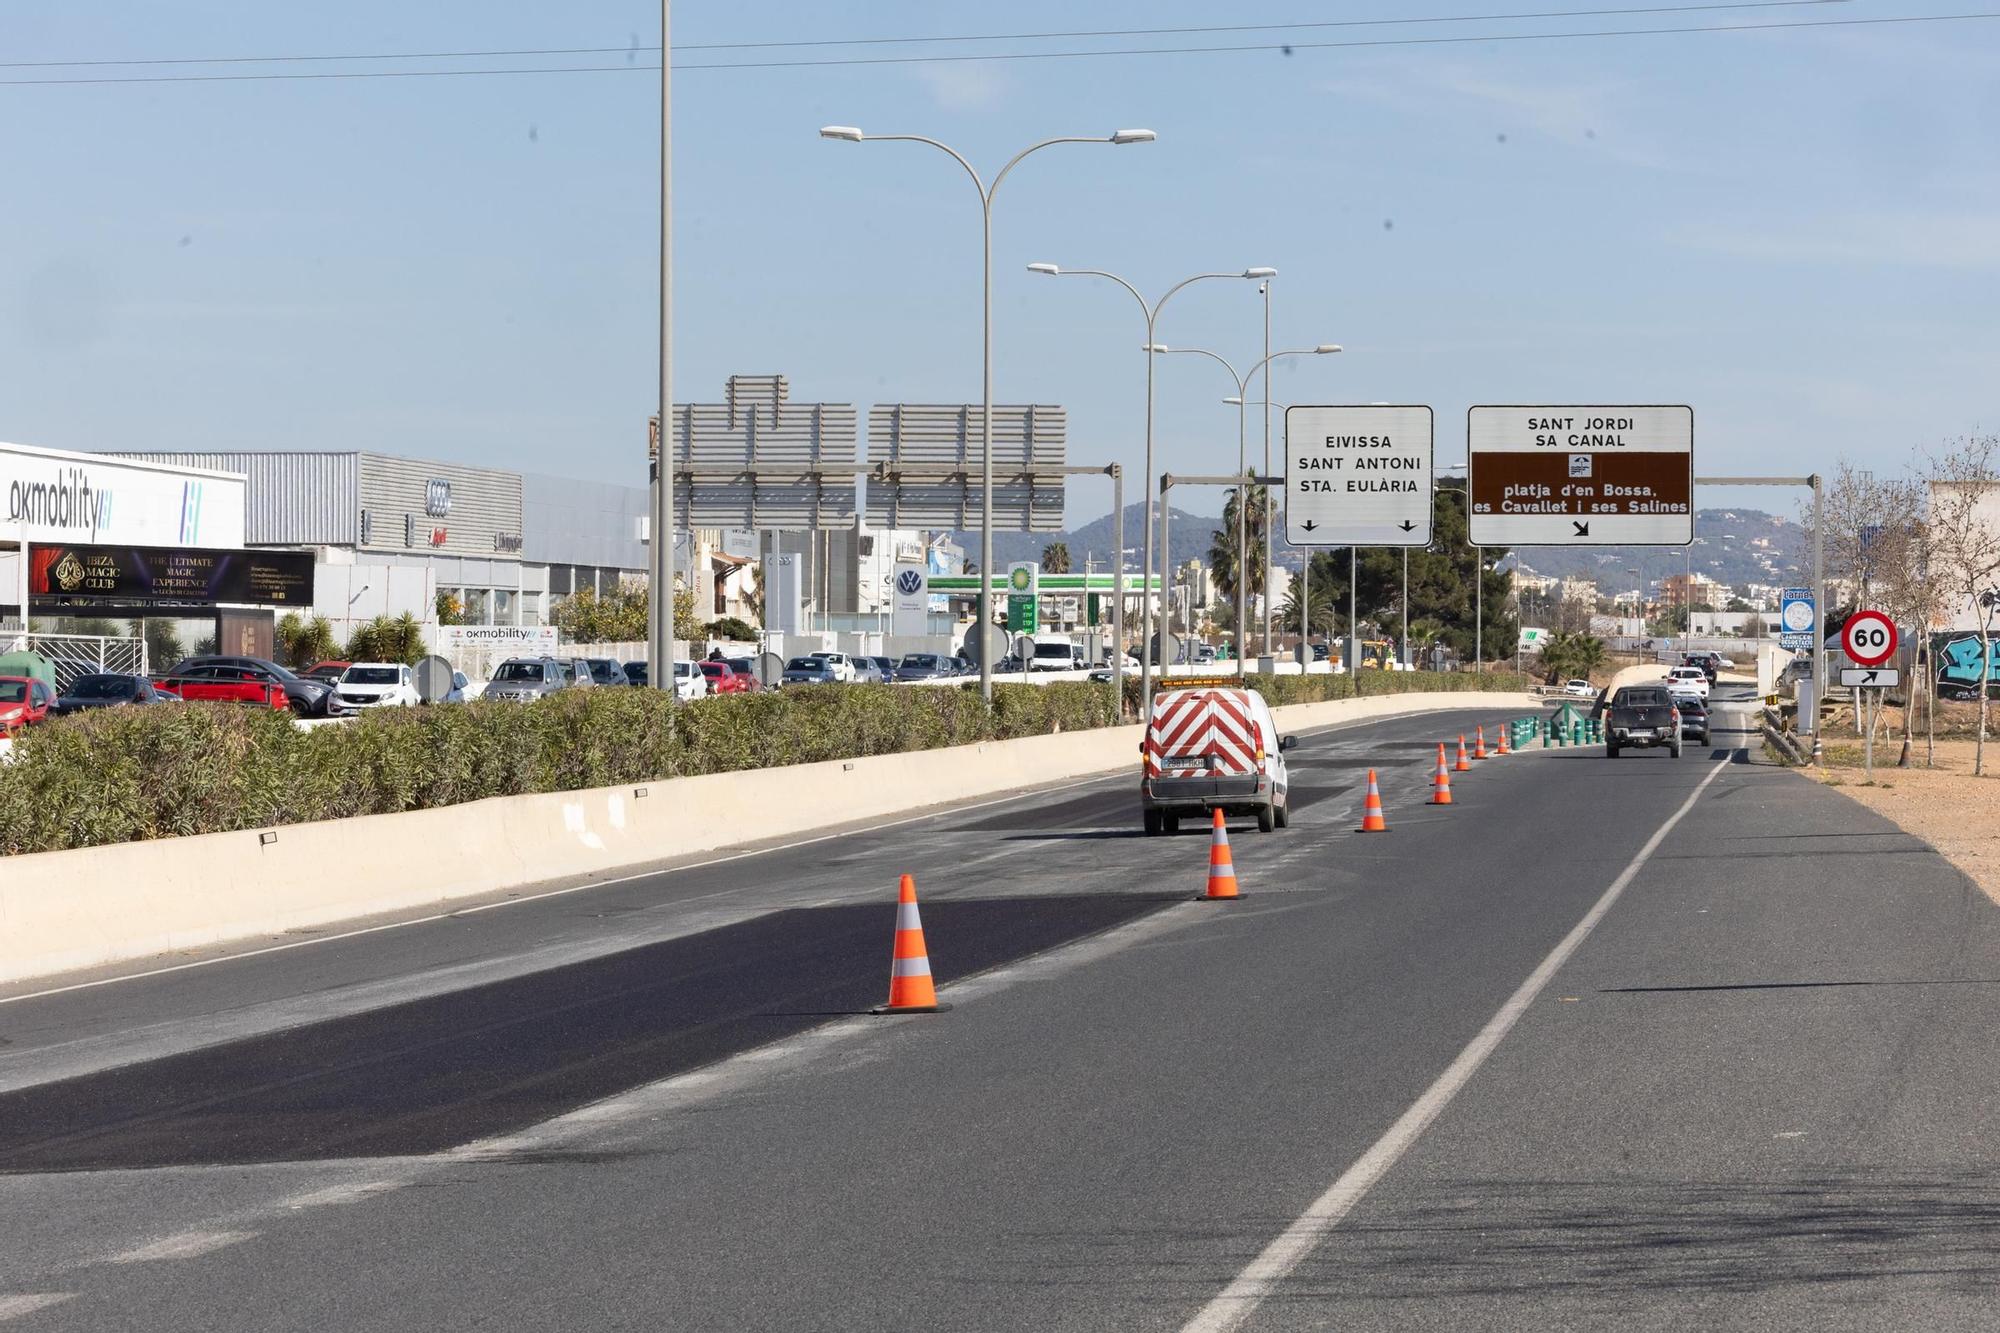 Galería: Atasco en la carretera del aeropuerto de Ibiza por las obras